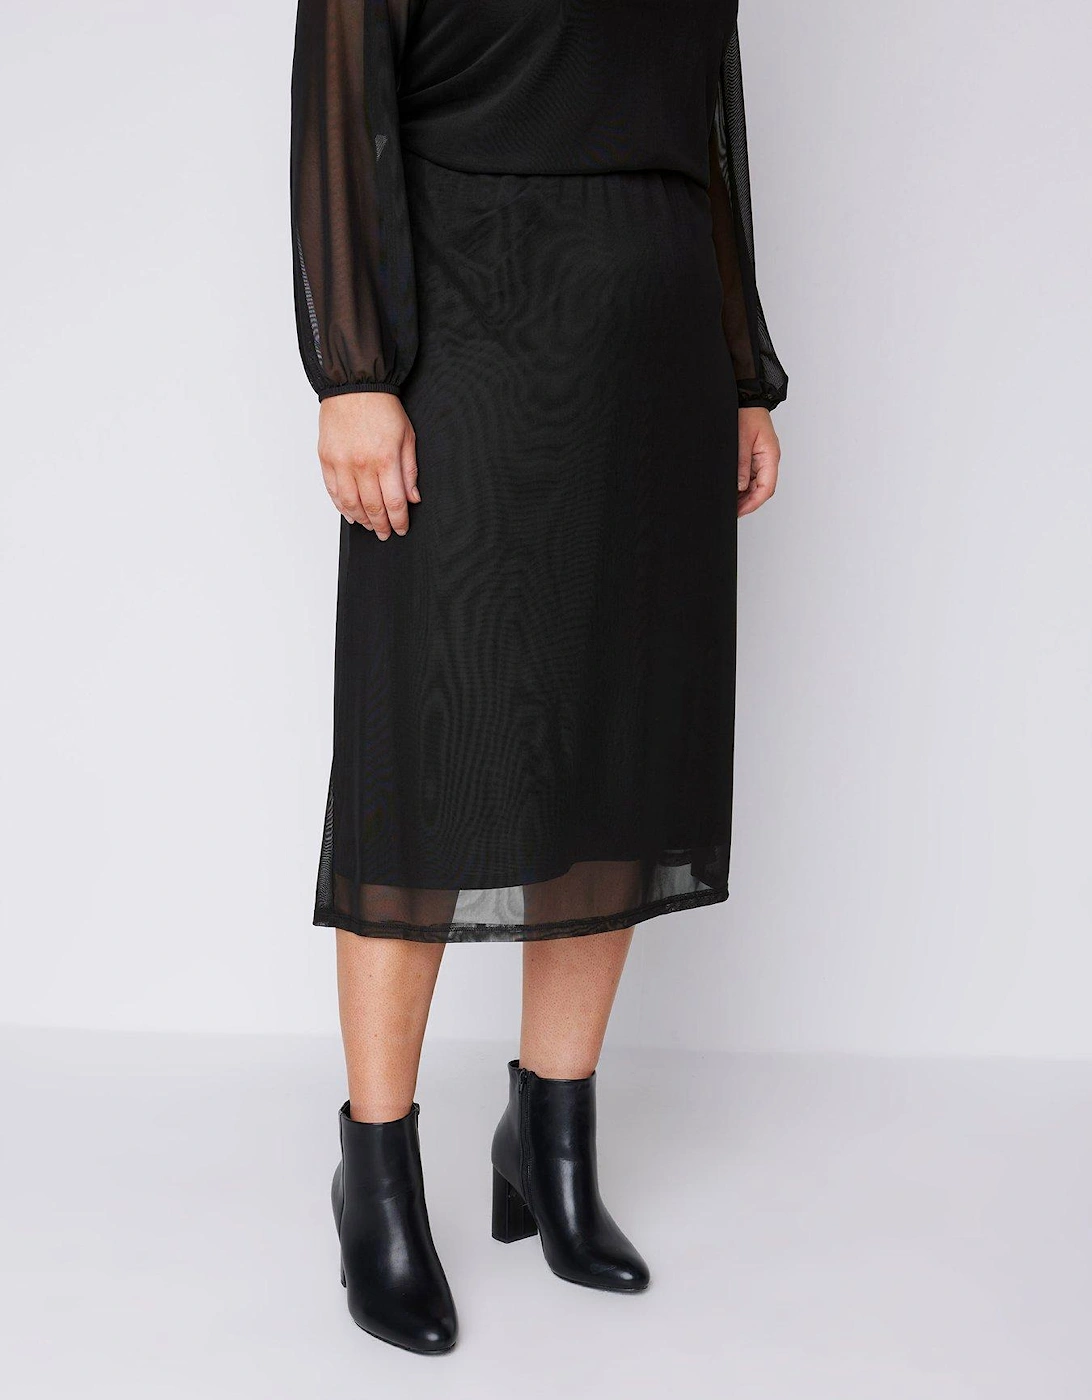 Mesh Skirt - Black, 2 of 1